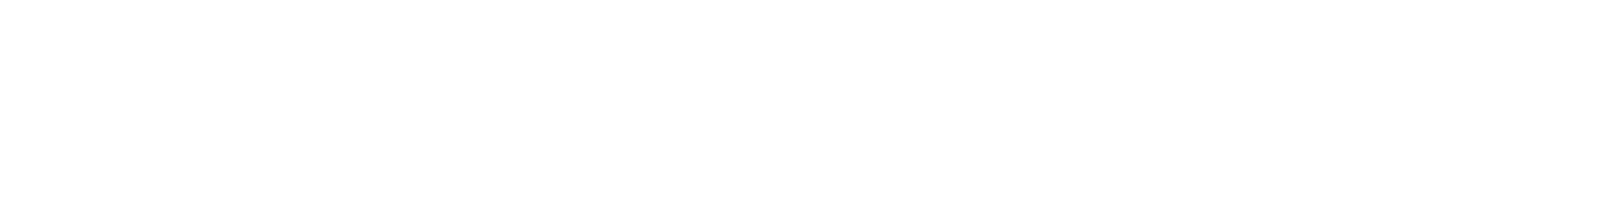 McKesson Logo groß für dunkle Hintergründe (transparentes PNG)